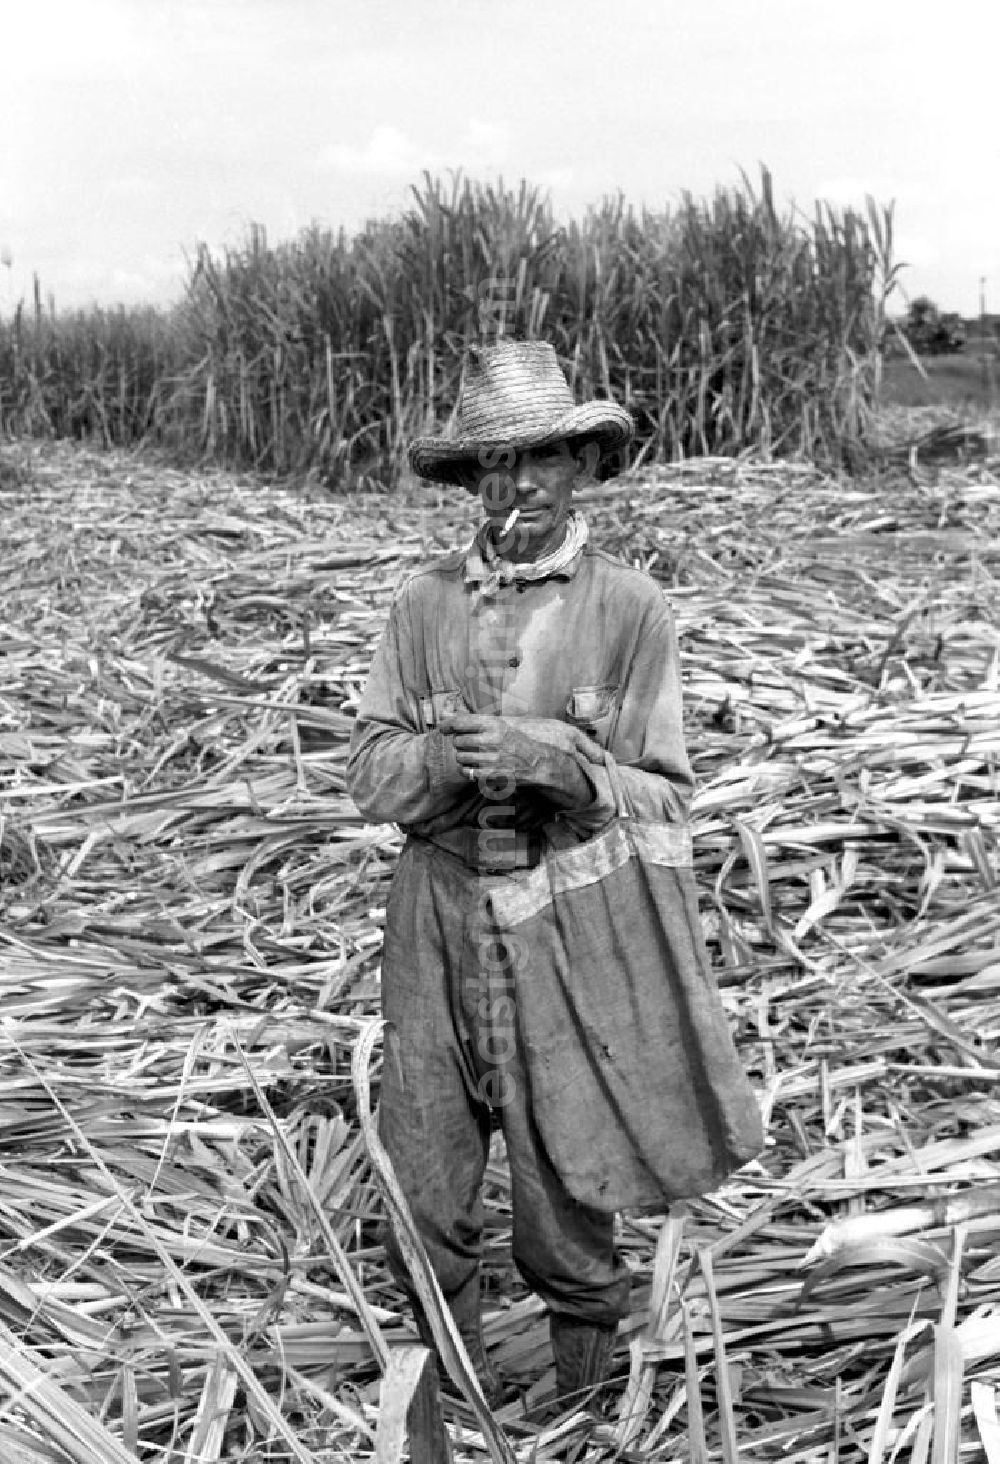 GDR picture archive: Camagüey - Ein Arbeiter während der Zuckerrohrernte, die sogenannte Zafra, in der kubanischen Provinz Camagüey.